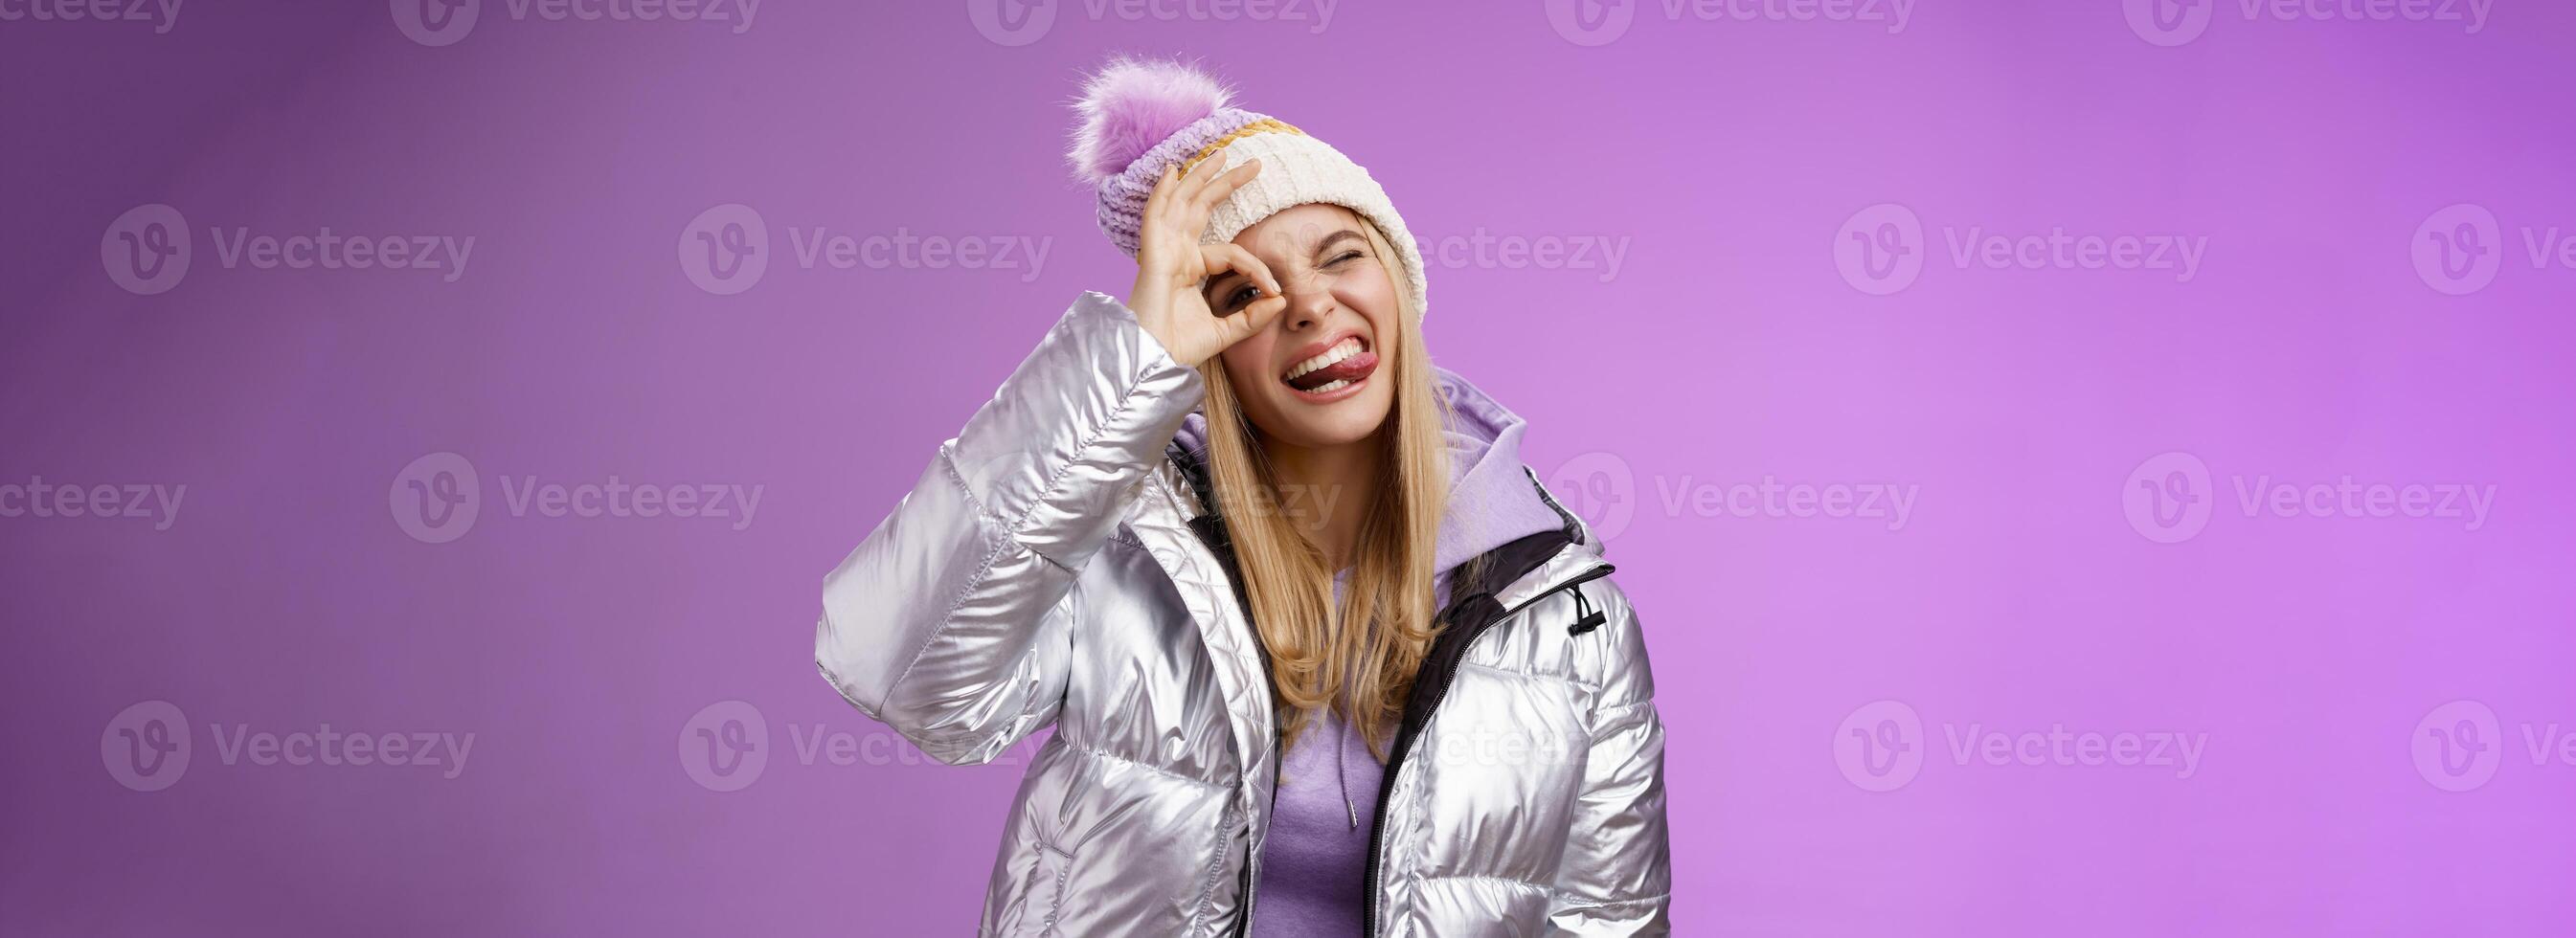 freundlich froh kaukasisch blond Mädchen im Hut warm stilvoll glänzend Silber Jacke Neigung Kopf glücklich Show Zunge lächelnd breit genießen genial Ski Resort Ferien Reisen Winter, lila Hintergrund foto